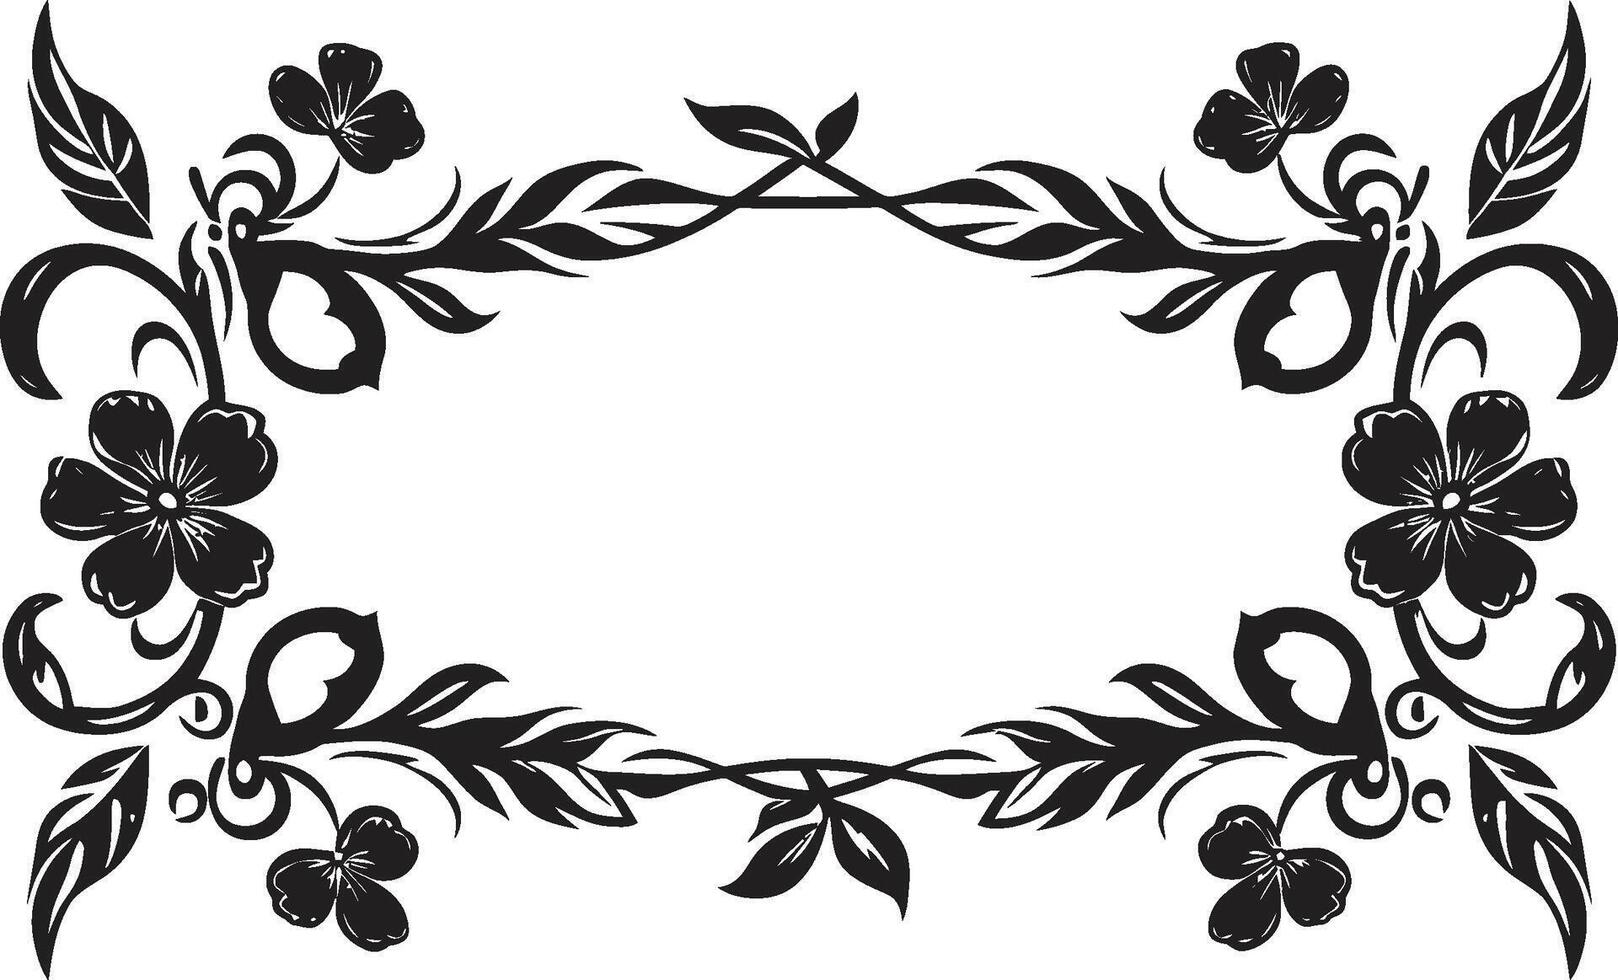 clásico artesanía elegante Clásico europeo frontera icono en monocromo Envejecido seducir pulcro emblema con negro europeo frontera diseño vector